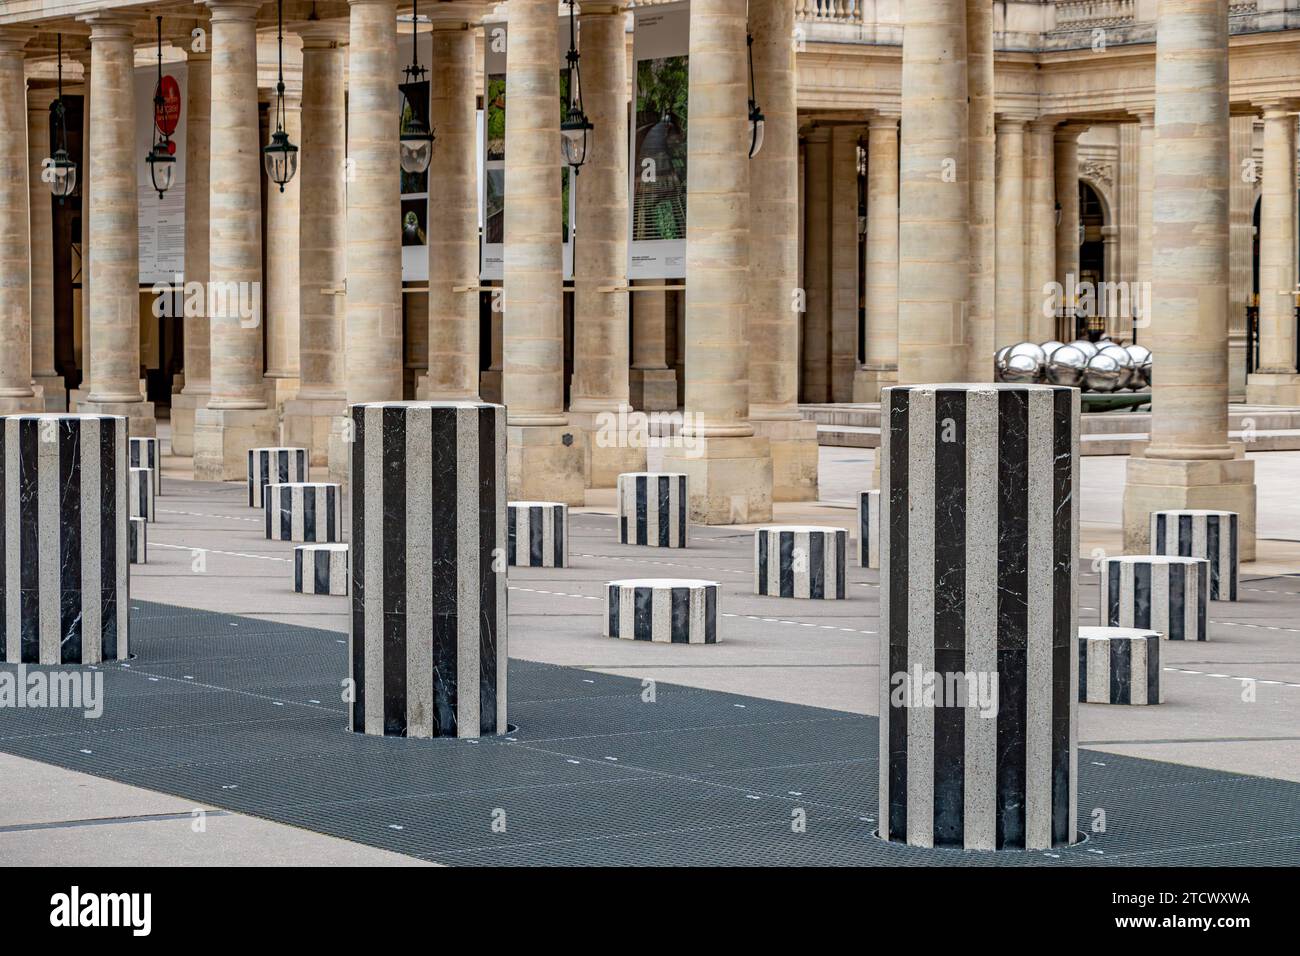 La cour intérieure, Cour d'Honneur, au Palais Royal avec une installation artistique de Daniel Buren de colonnes rayées noires et blanches, Paris, France Banque D'Images